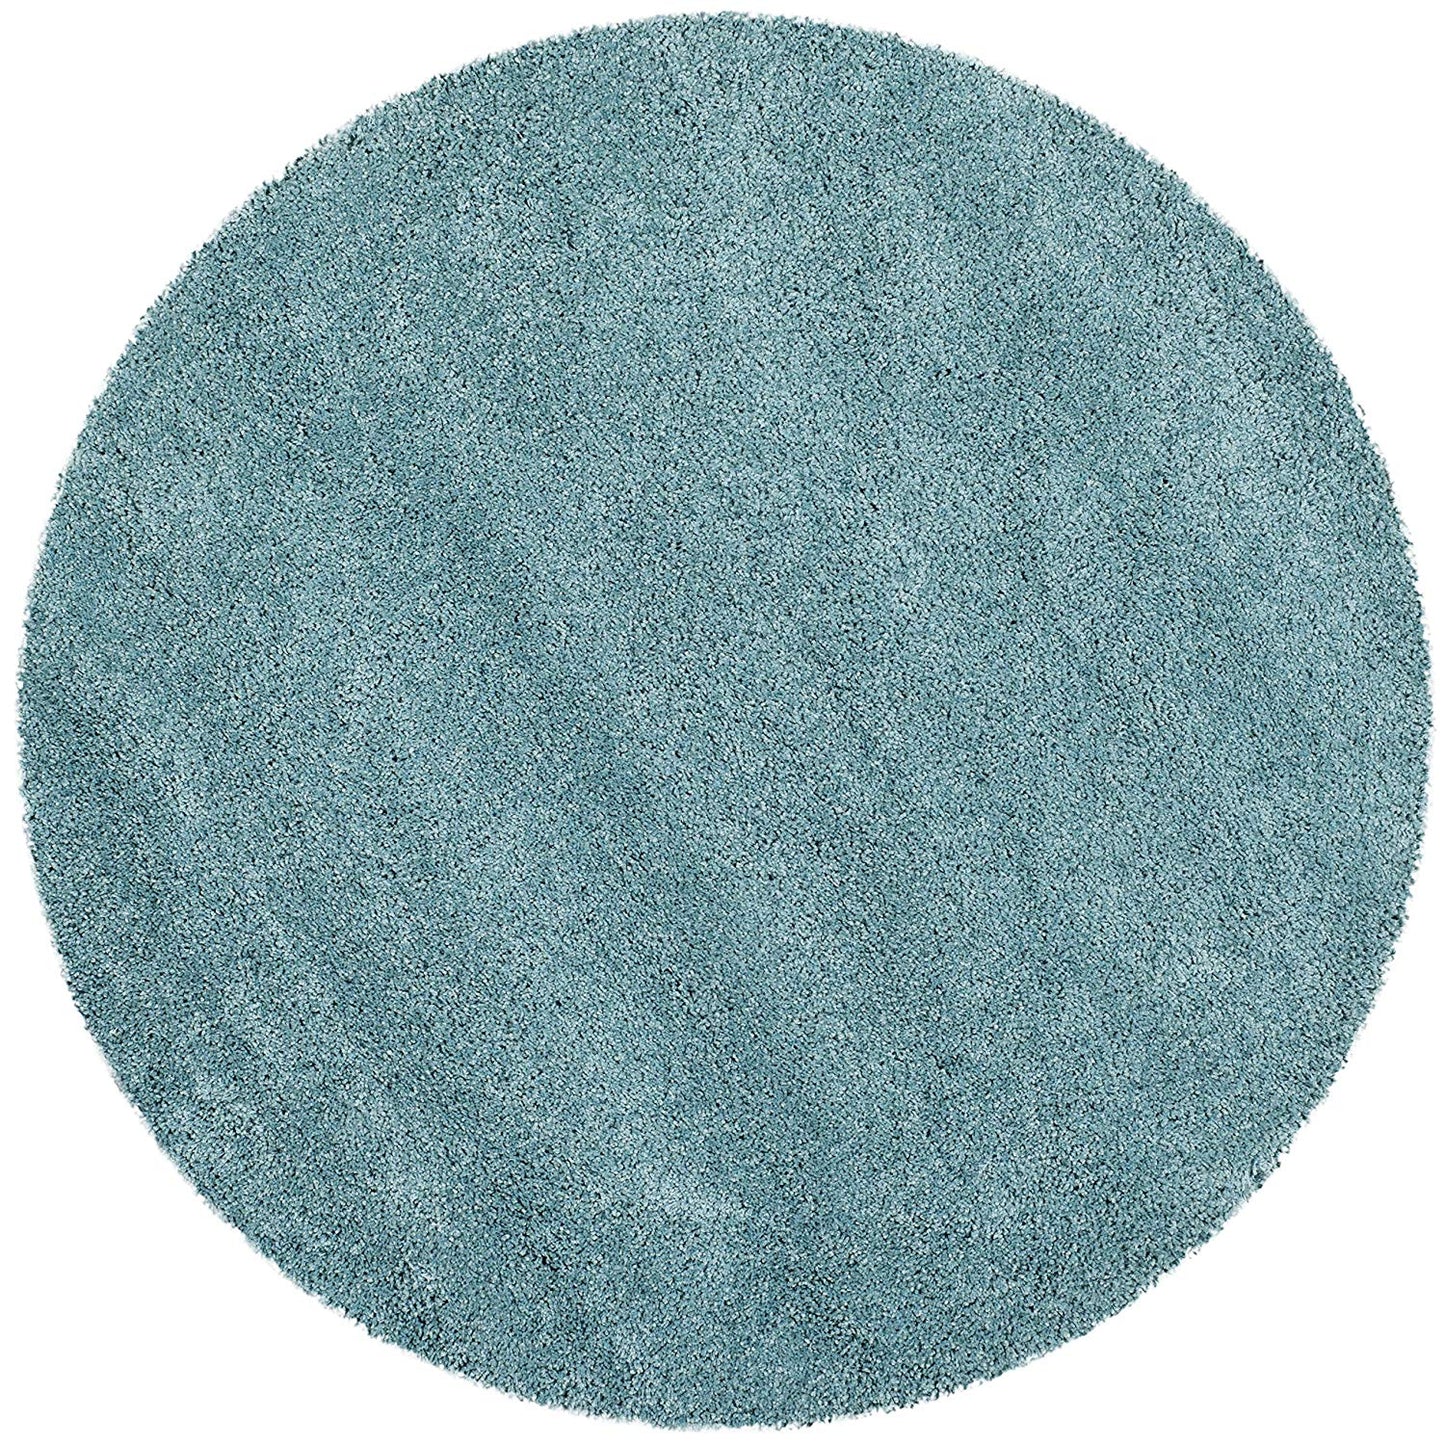 Aqua Blue Soft Plush Shag Area Rug